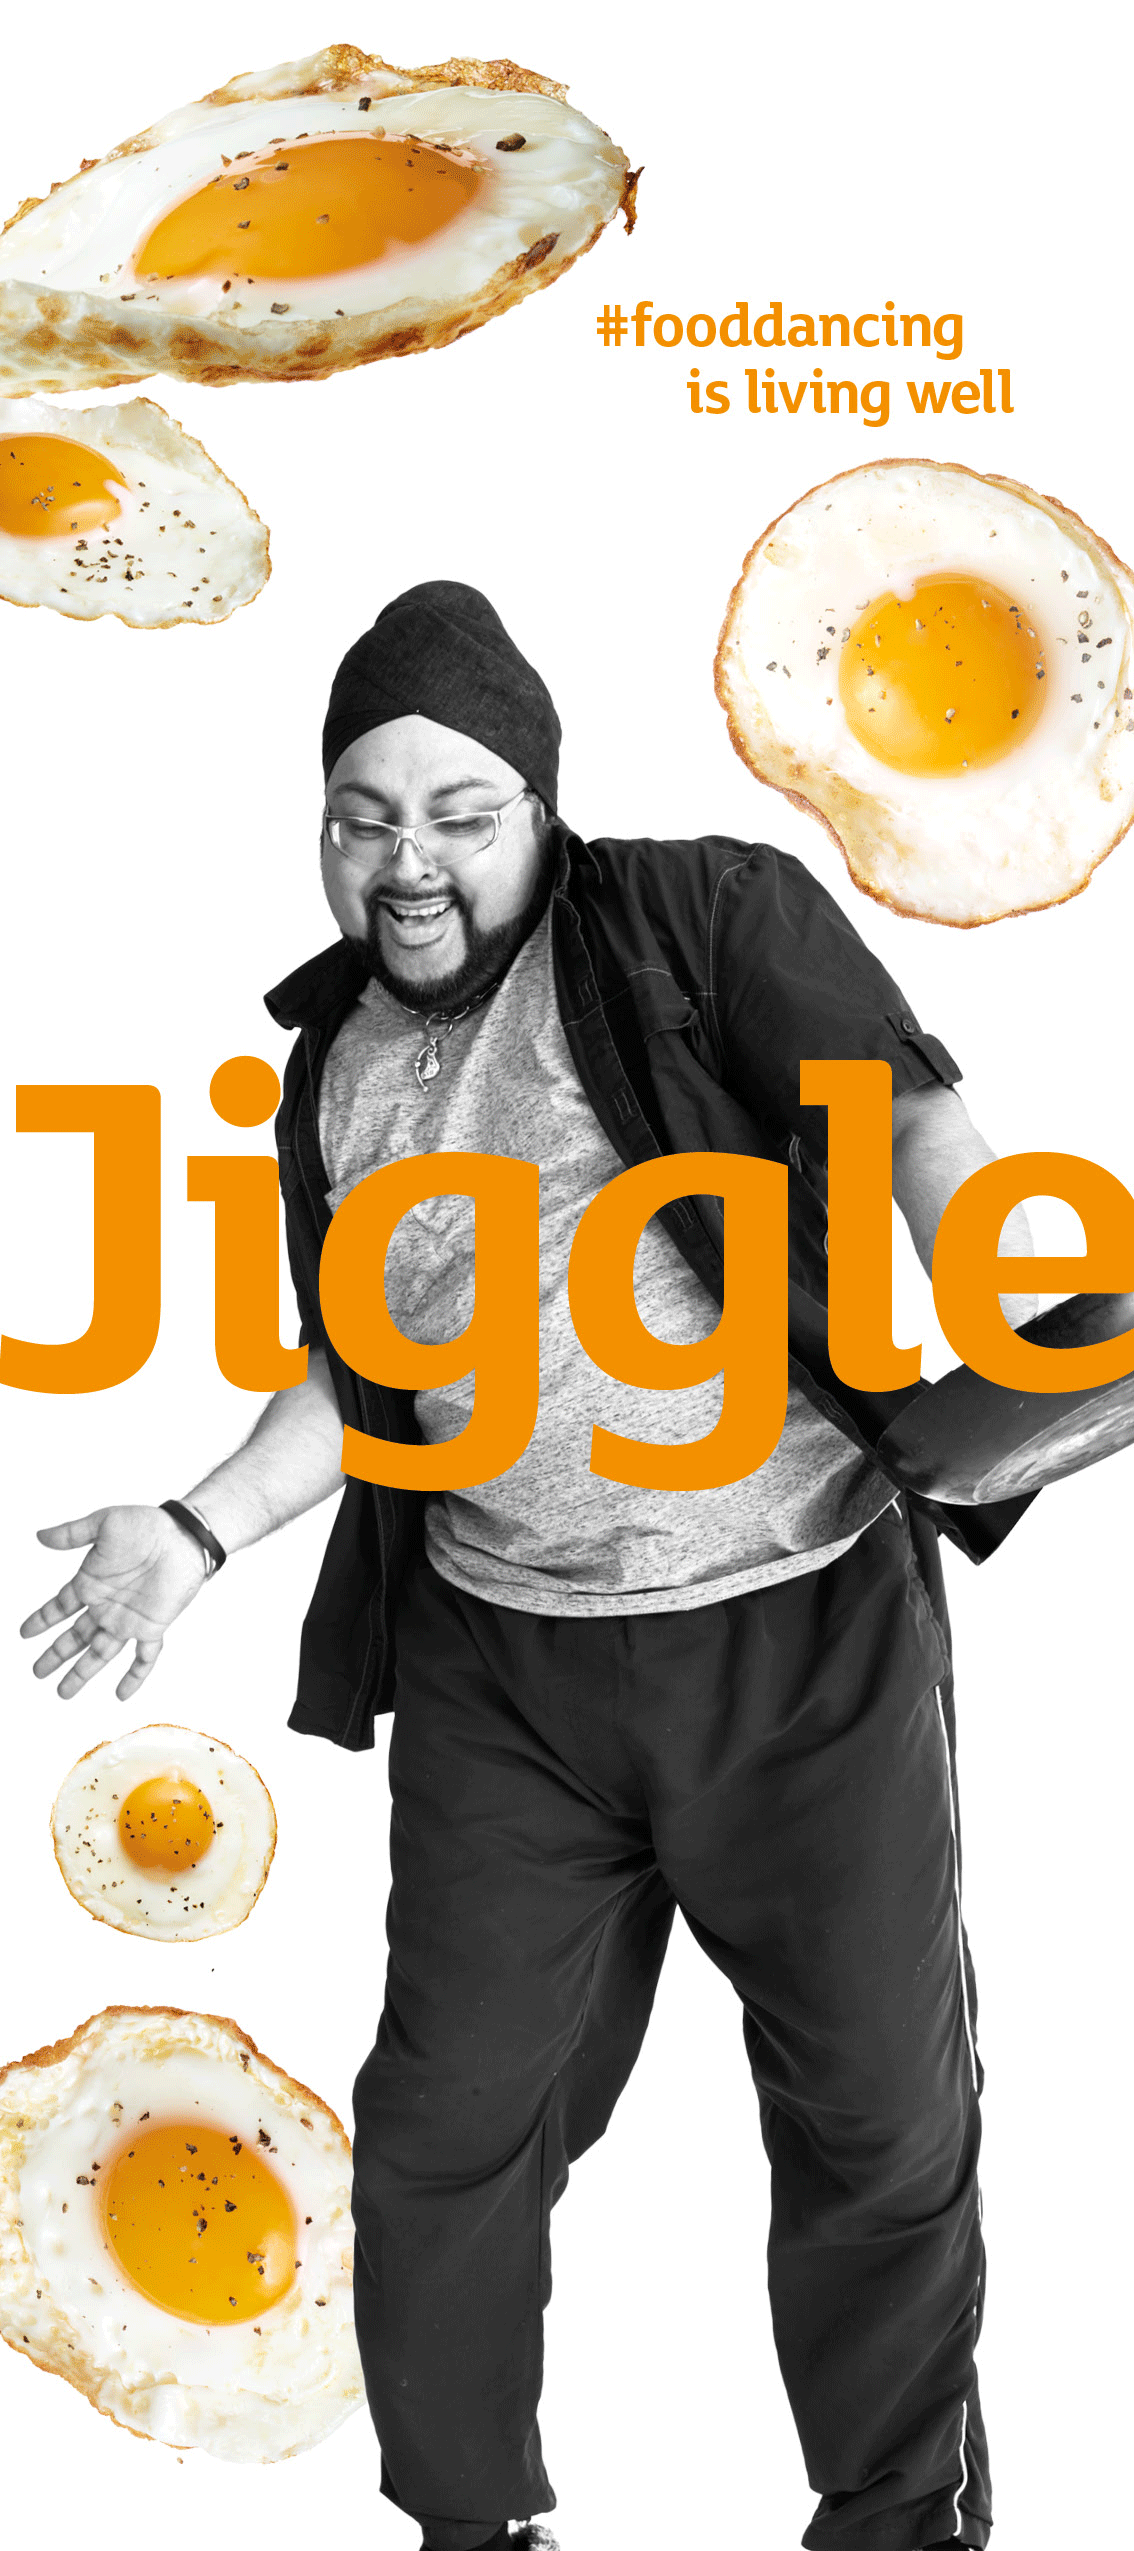 Sainsbury's Kampagne - Jiggle